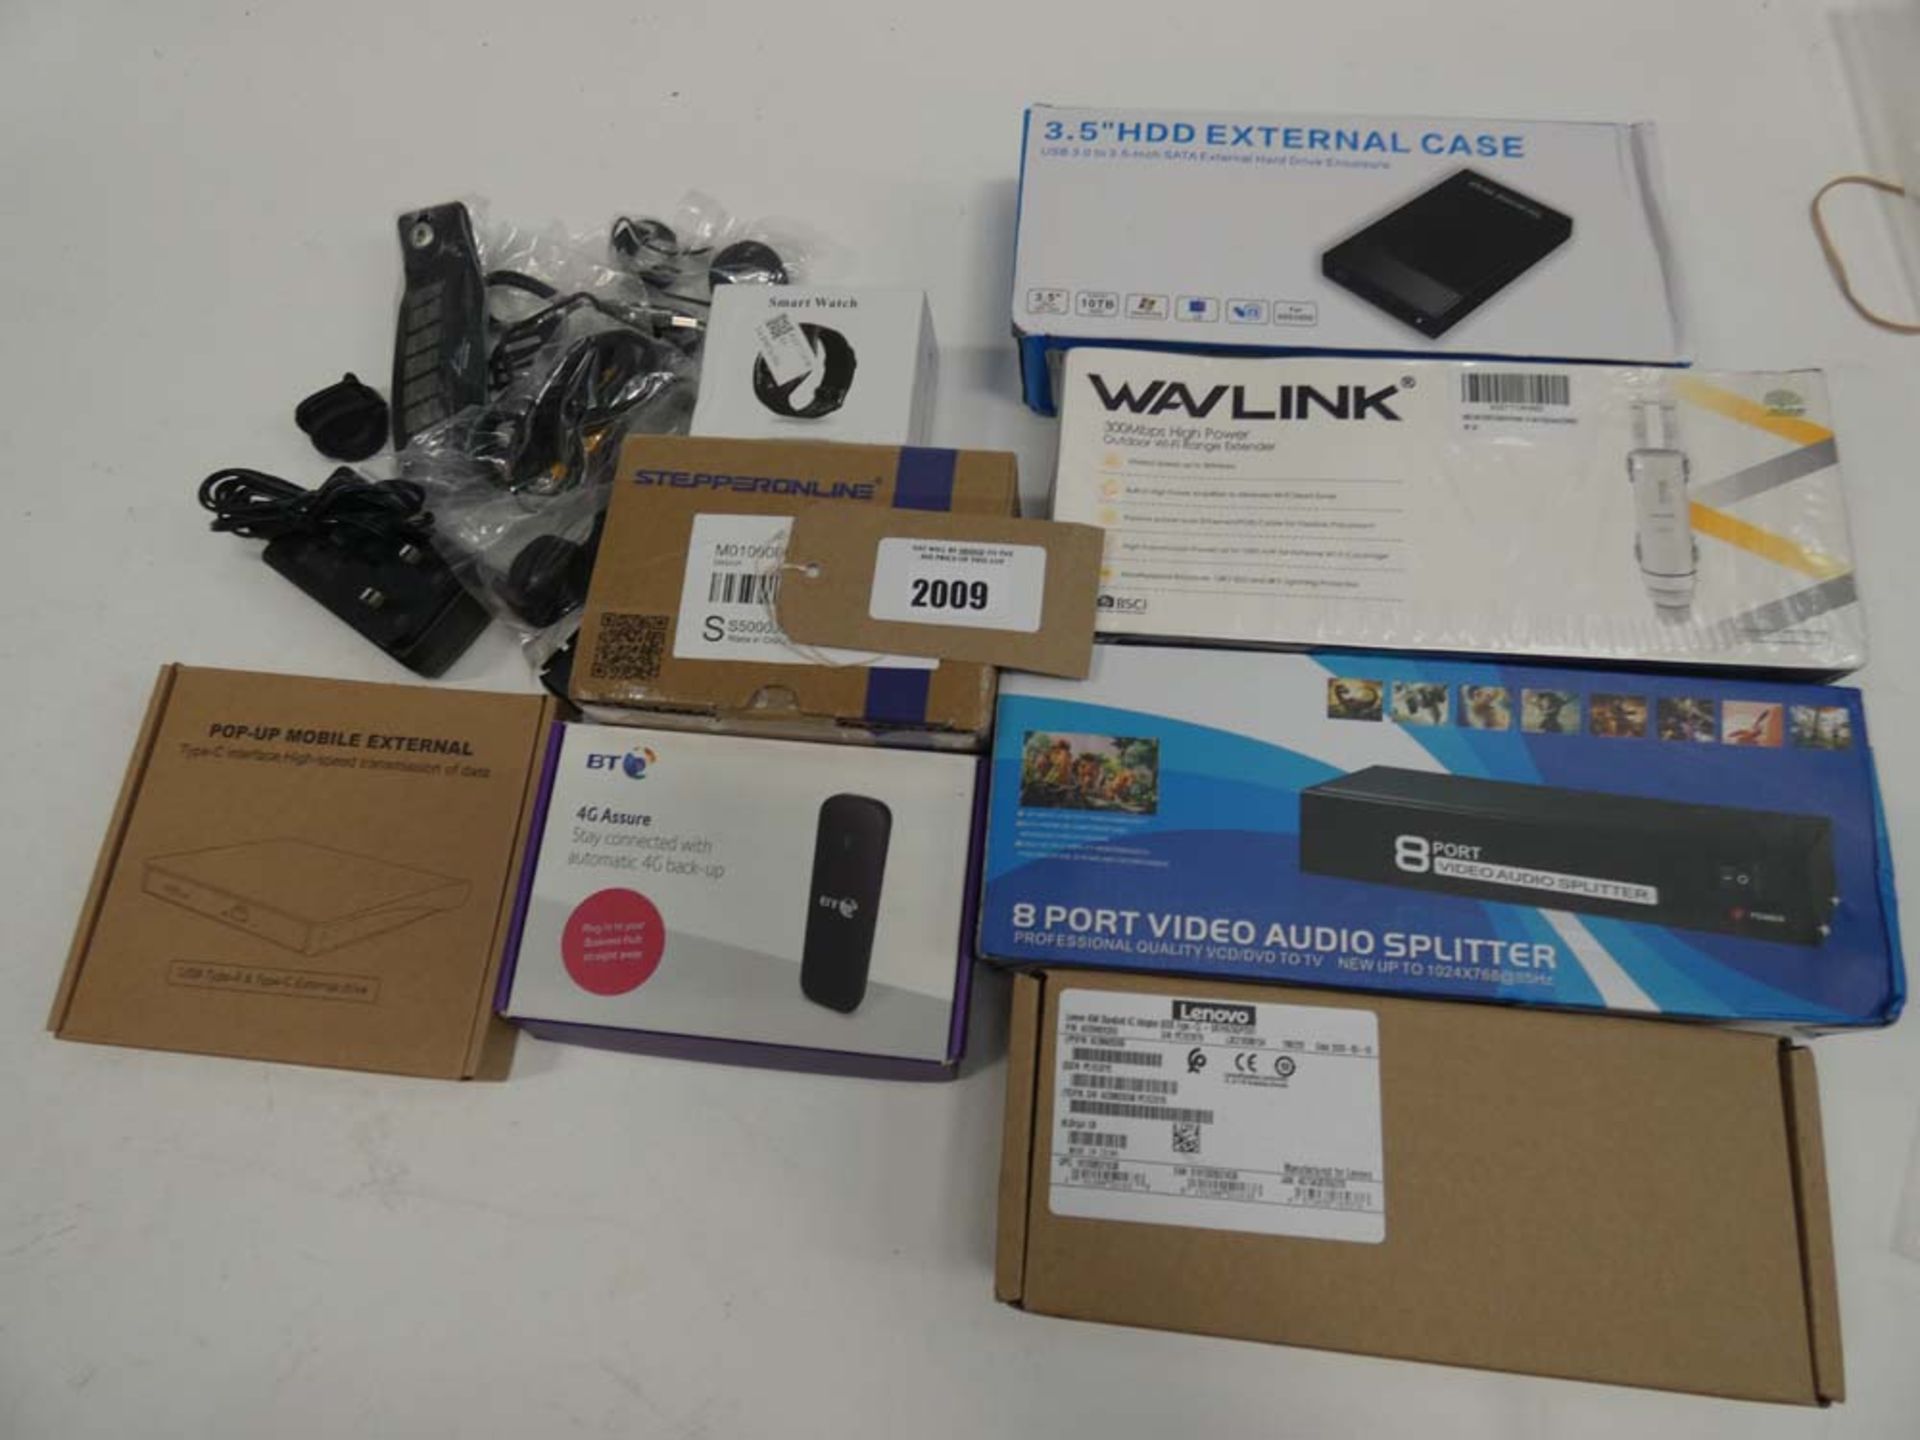 Bag containng Wavlink, 8 port video audio splitter, external CD drive, smart watch, BT 4G Assure